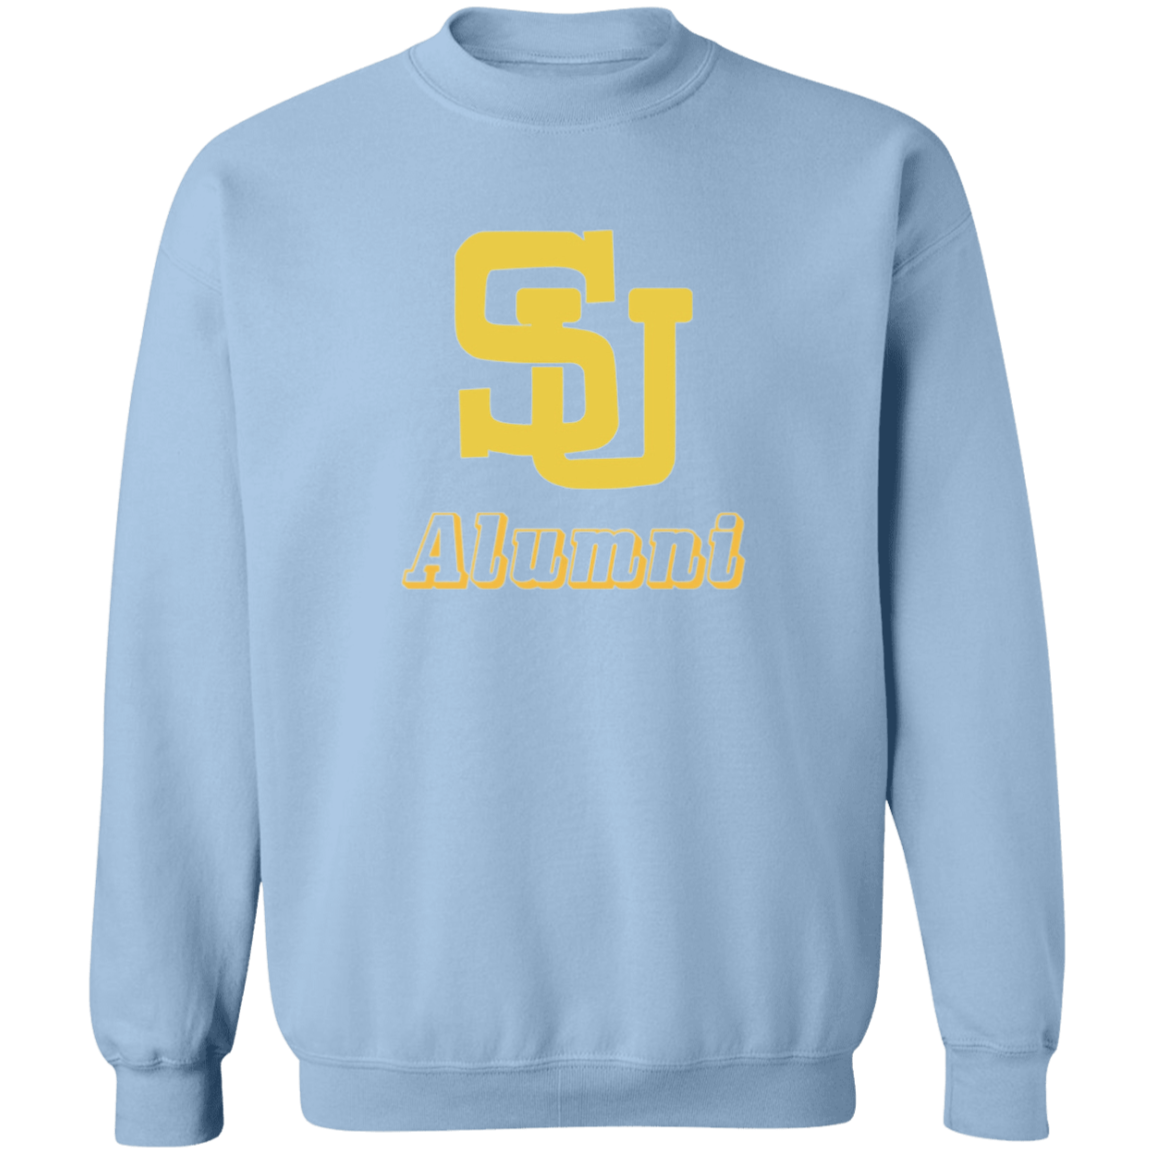 SU Alum 1987 Edition G180 Crewneck Pullover Sweatshirt